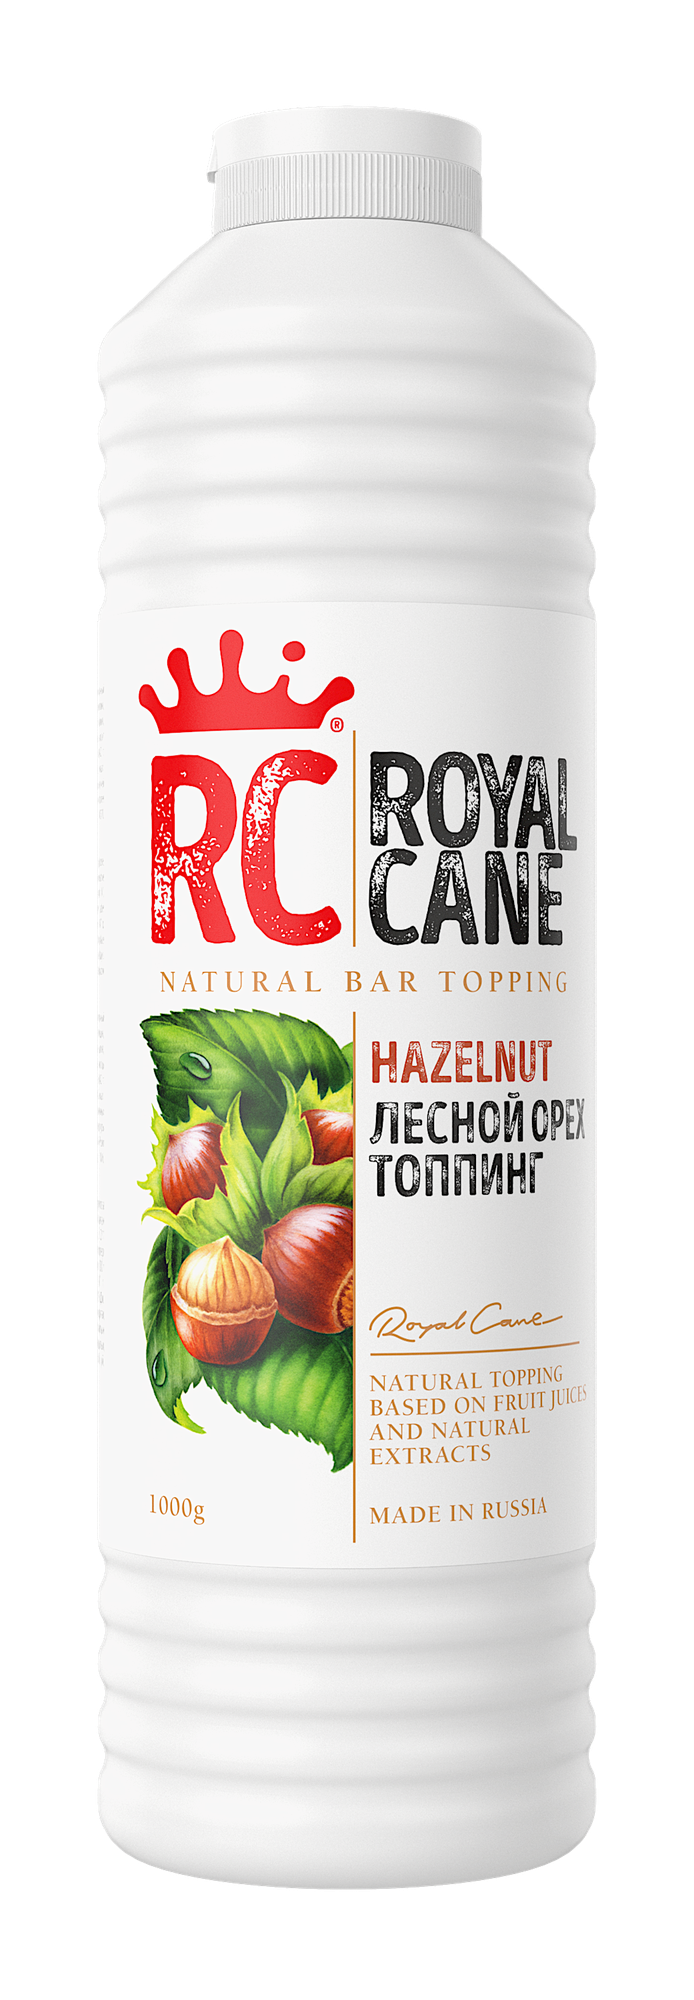 Топпинг Royal Cane "Лесной Орех" 1 кг для кофе, десертов и мороженого.